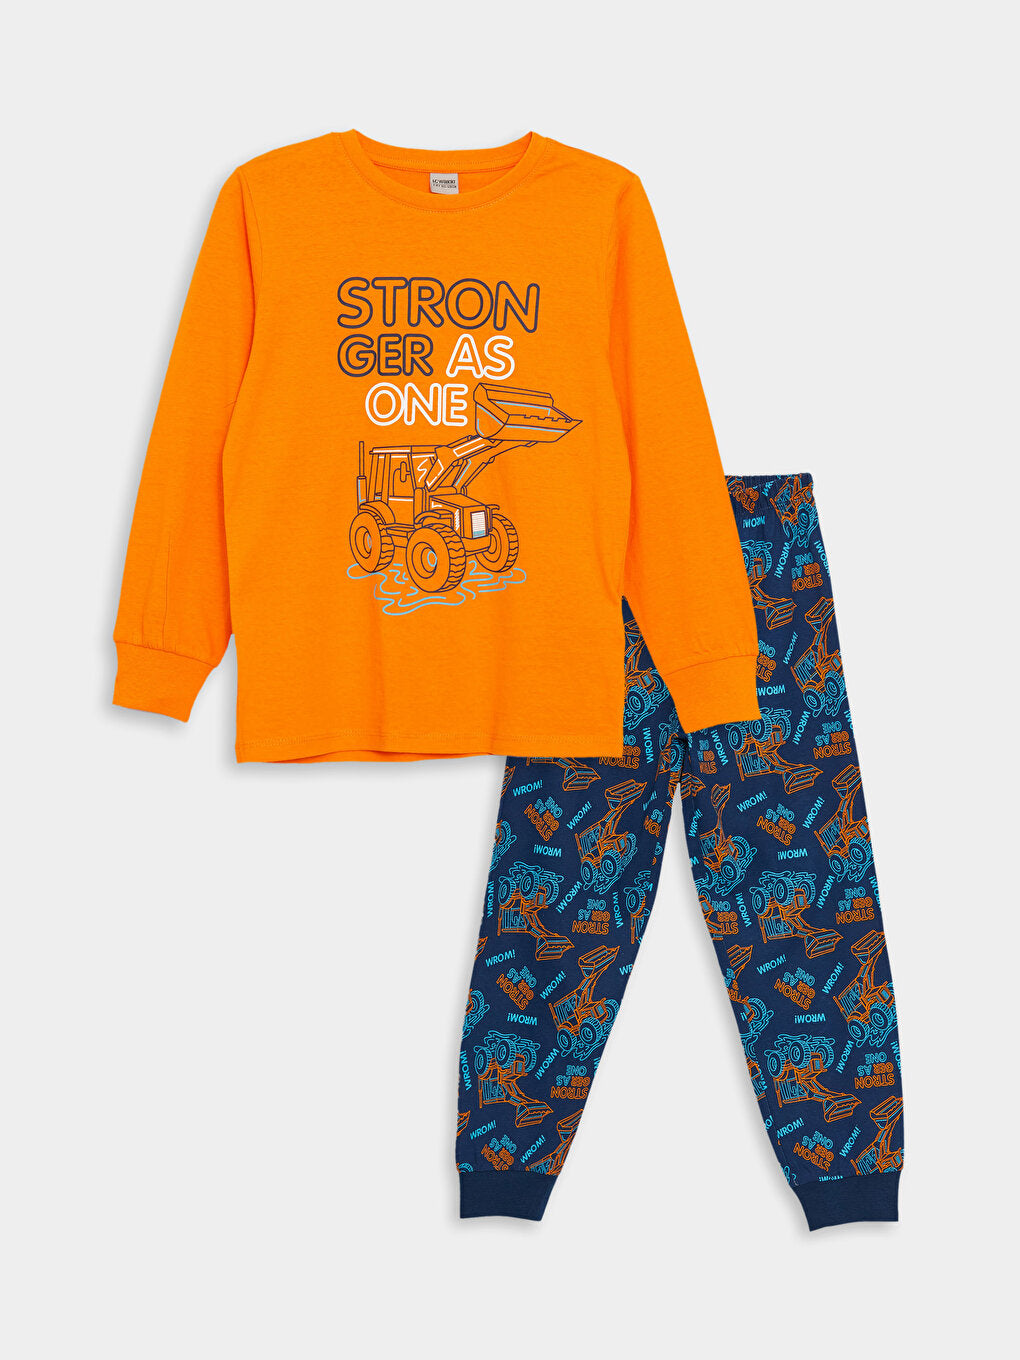 Crew Neck Printed Long Sleeve Boys Pajama Set